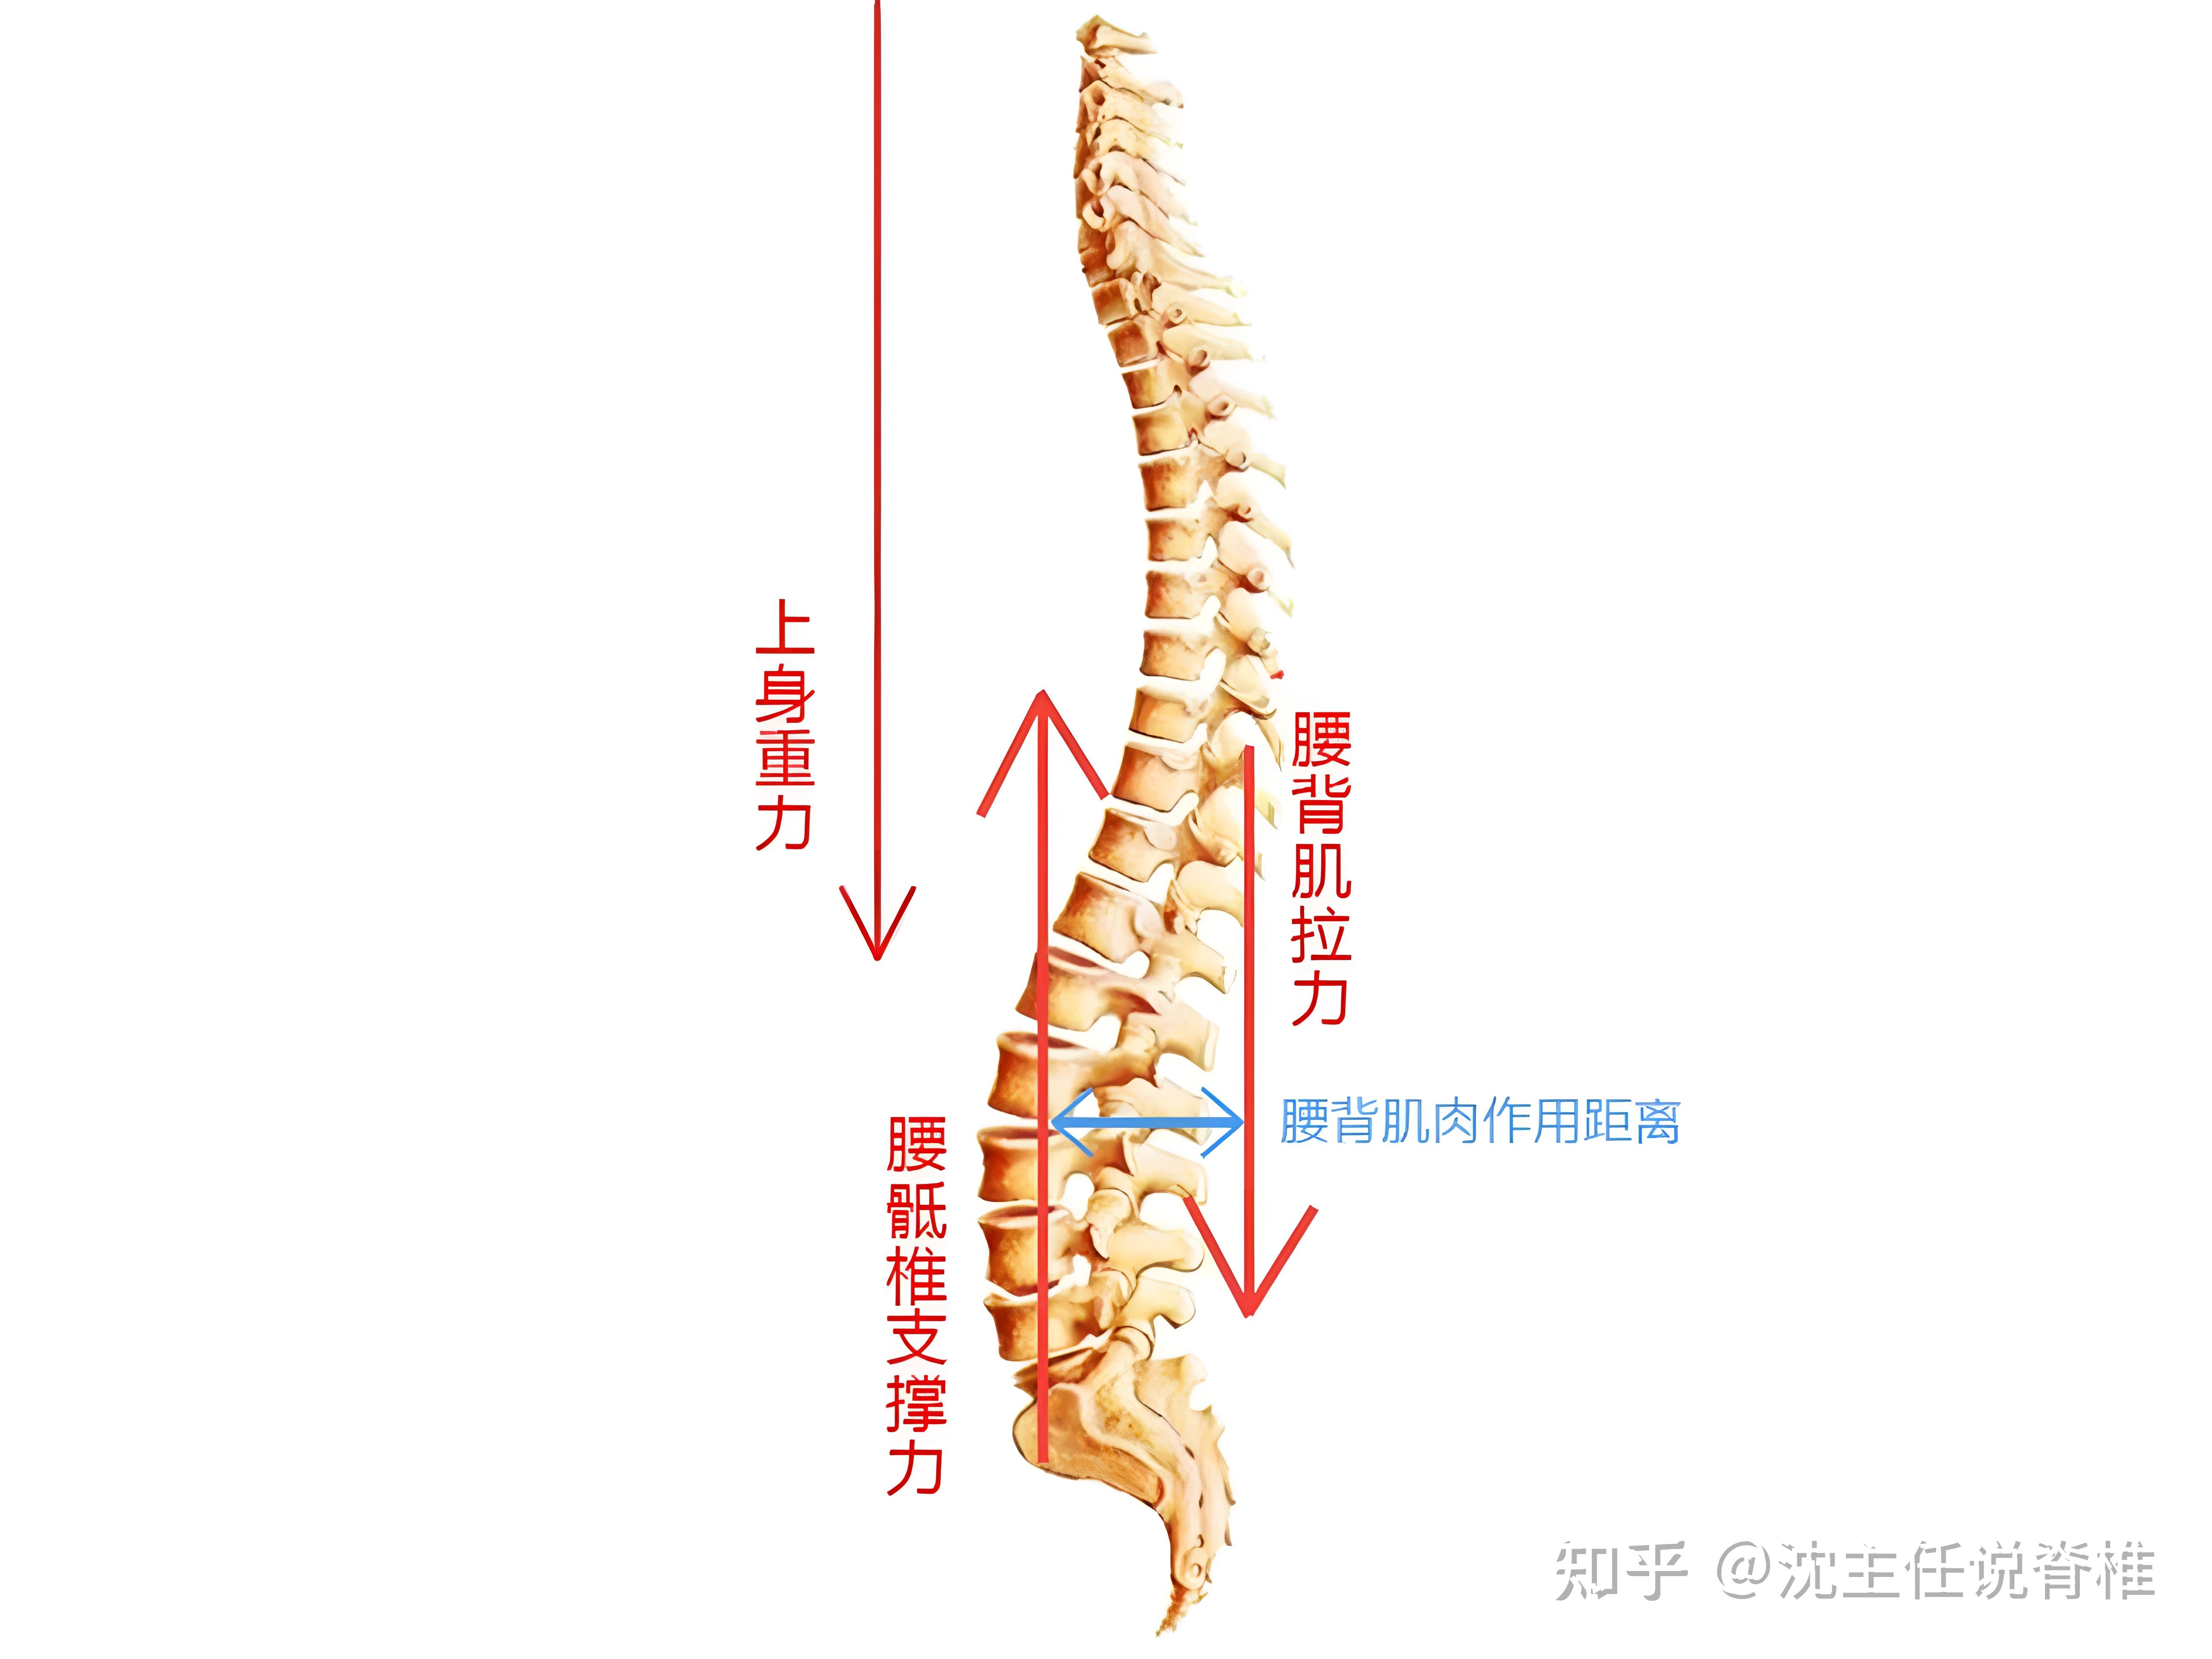 腰椎的生理弯曲结构,是由腰椎间盘前高后低的楔形形状造就的,是个非常